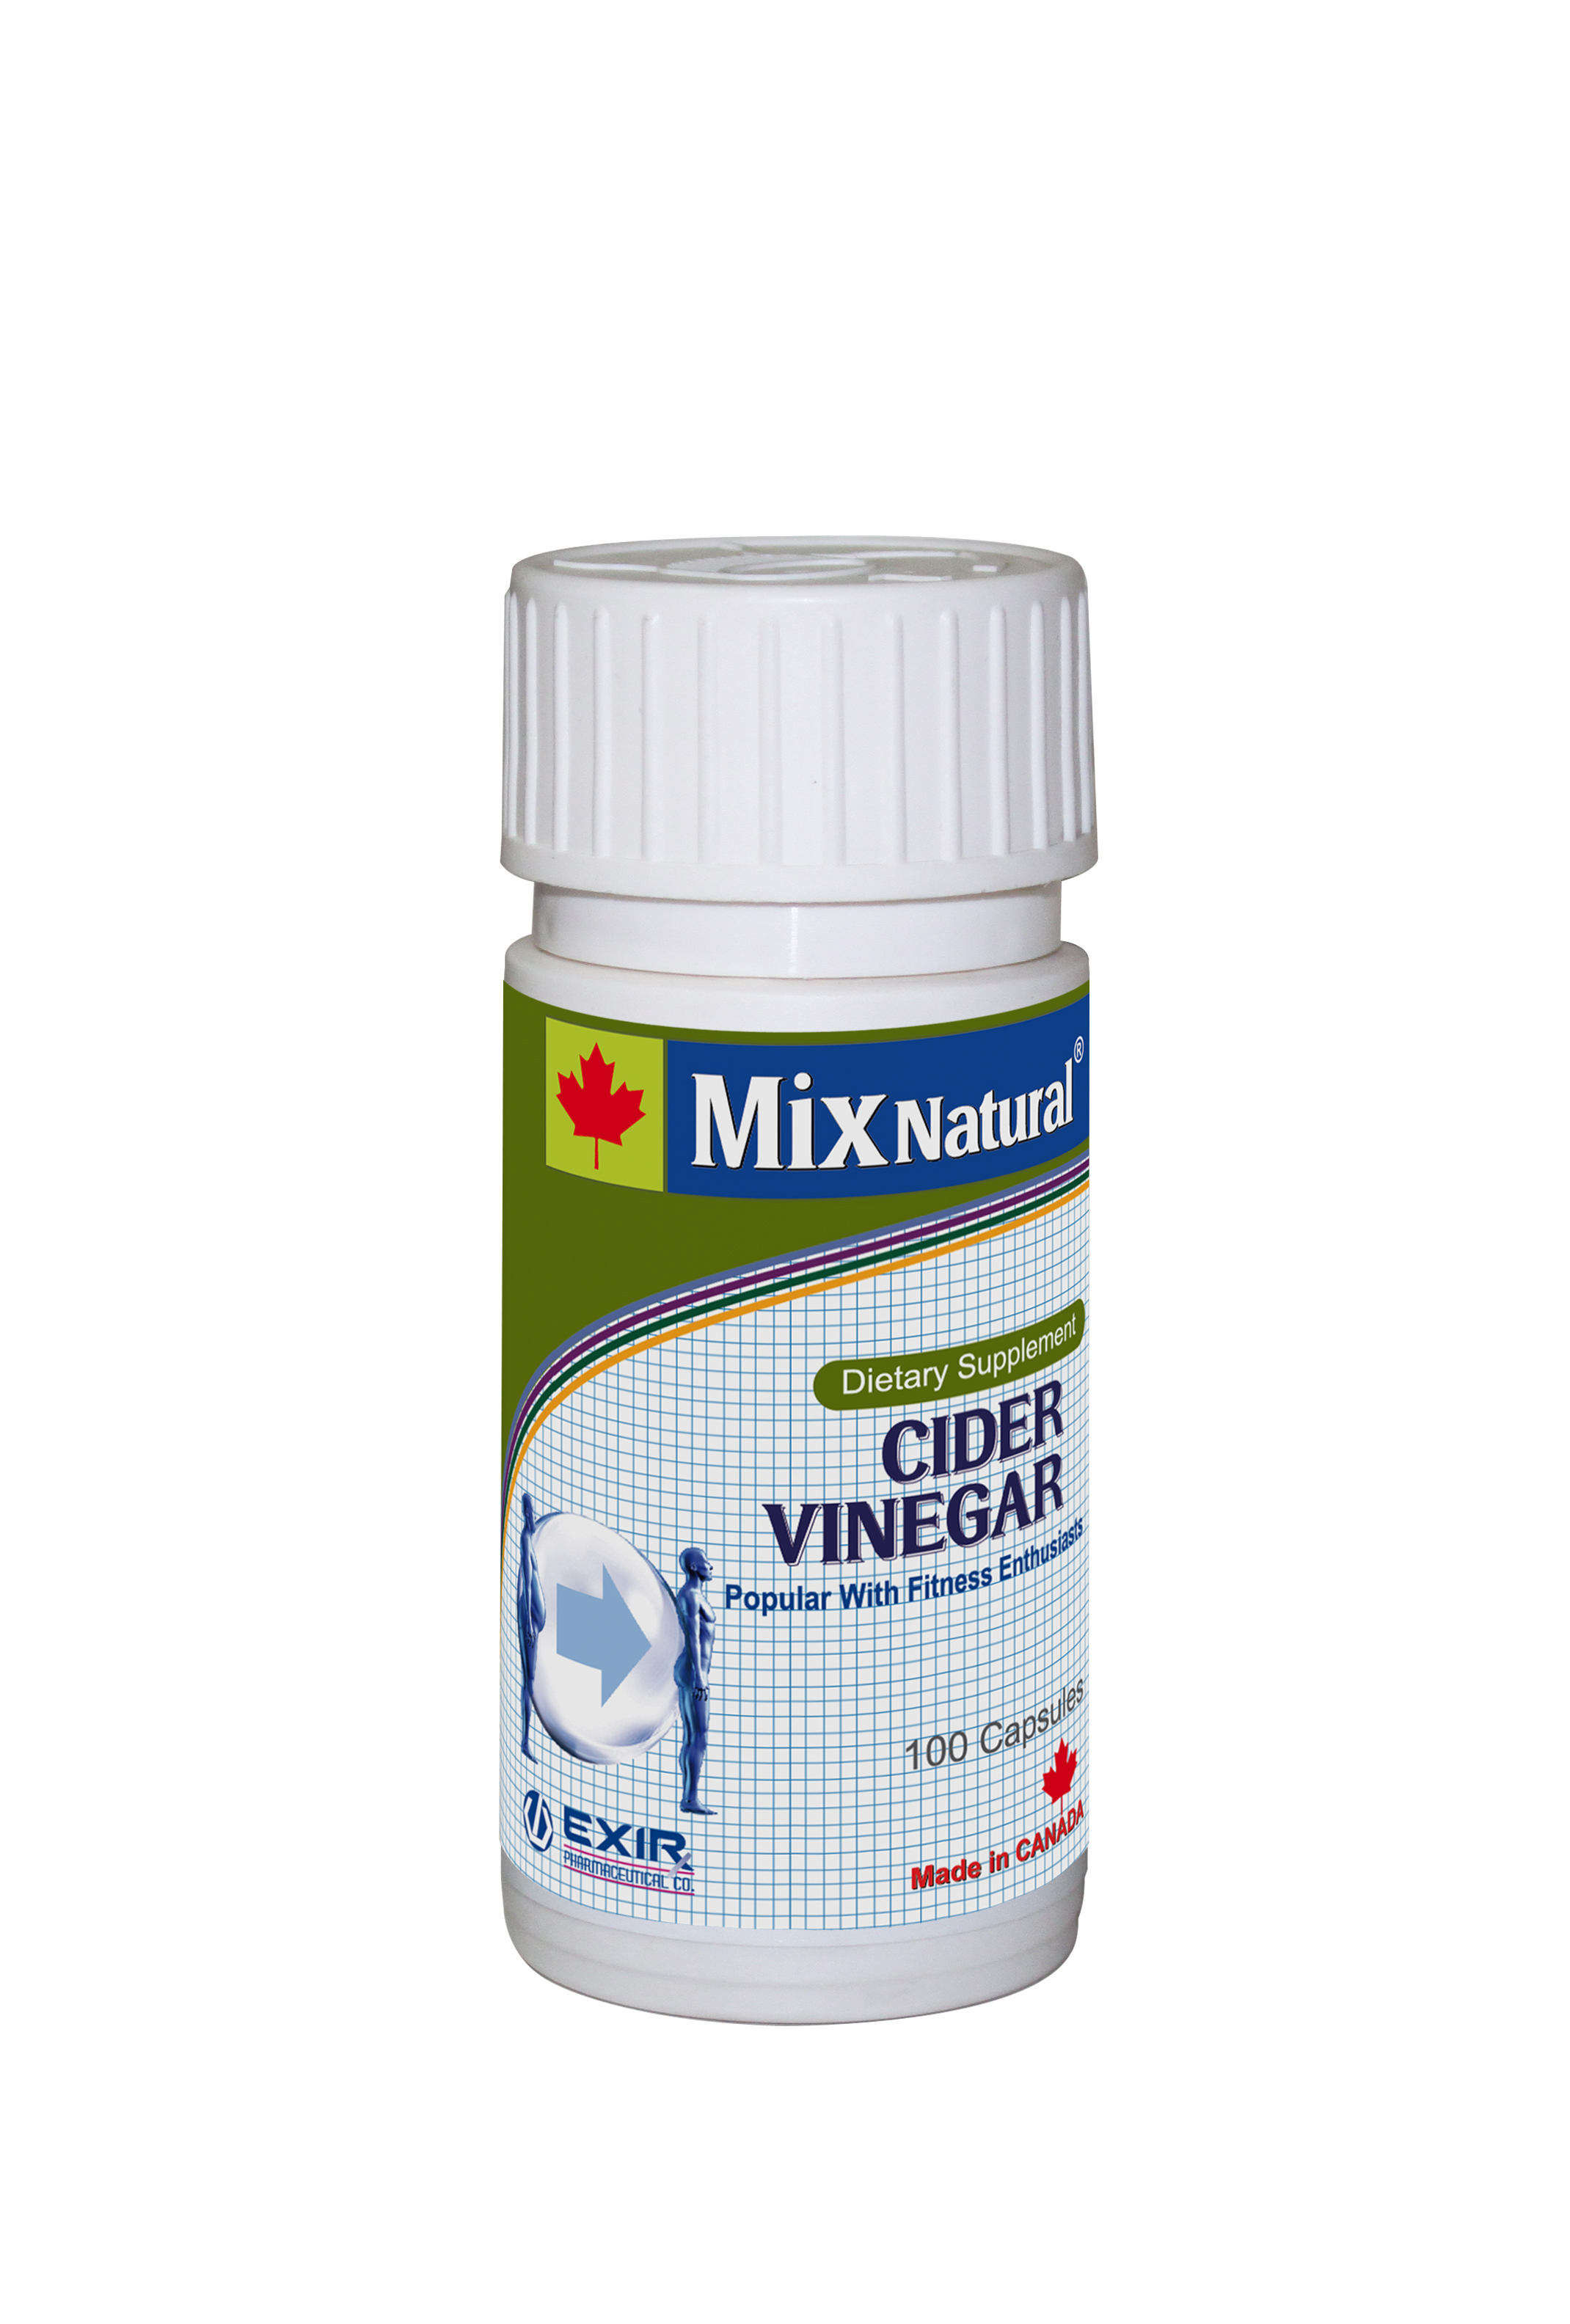  Cider Vinegar MIX NATURAL